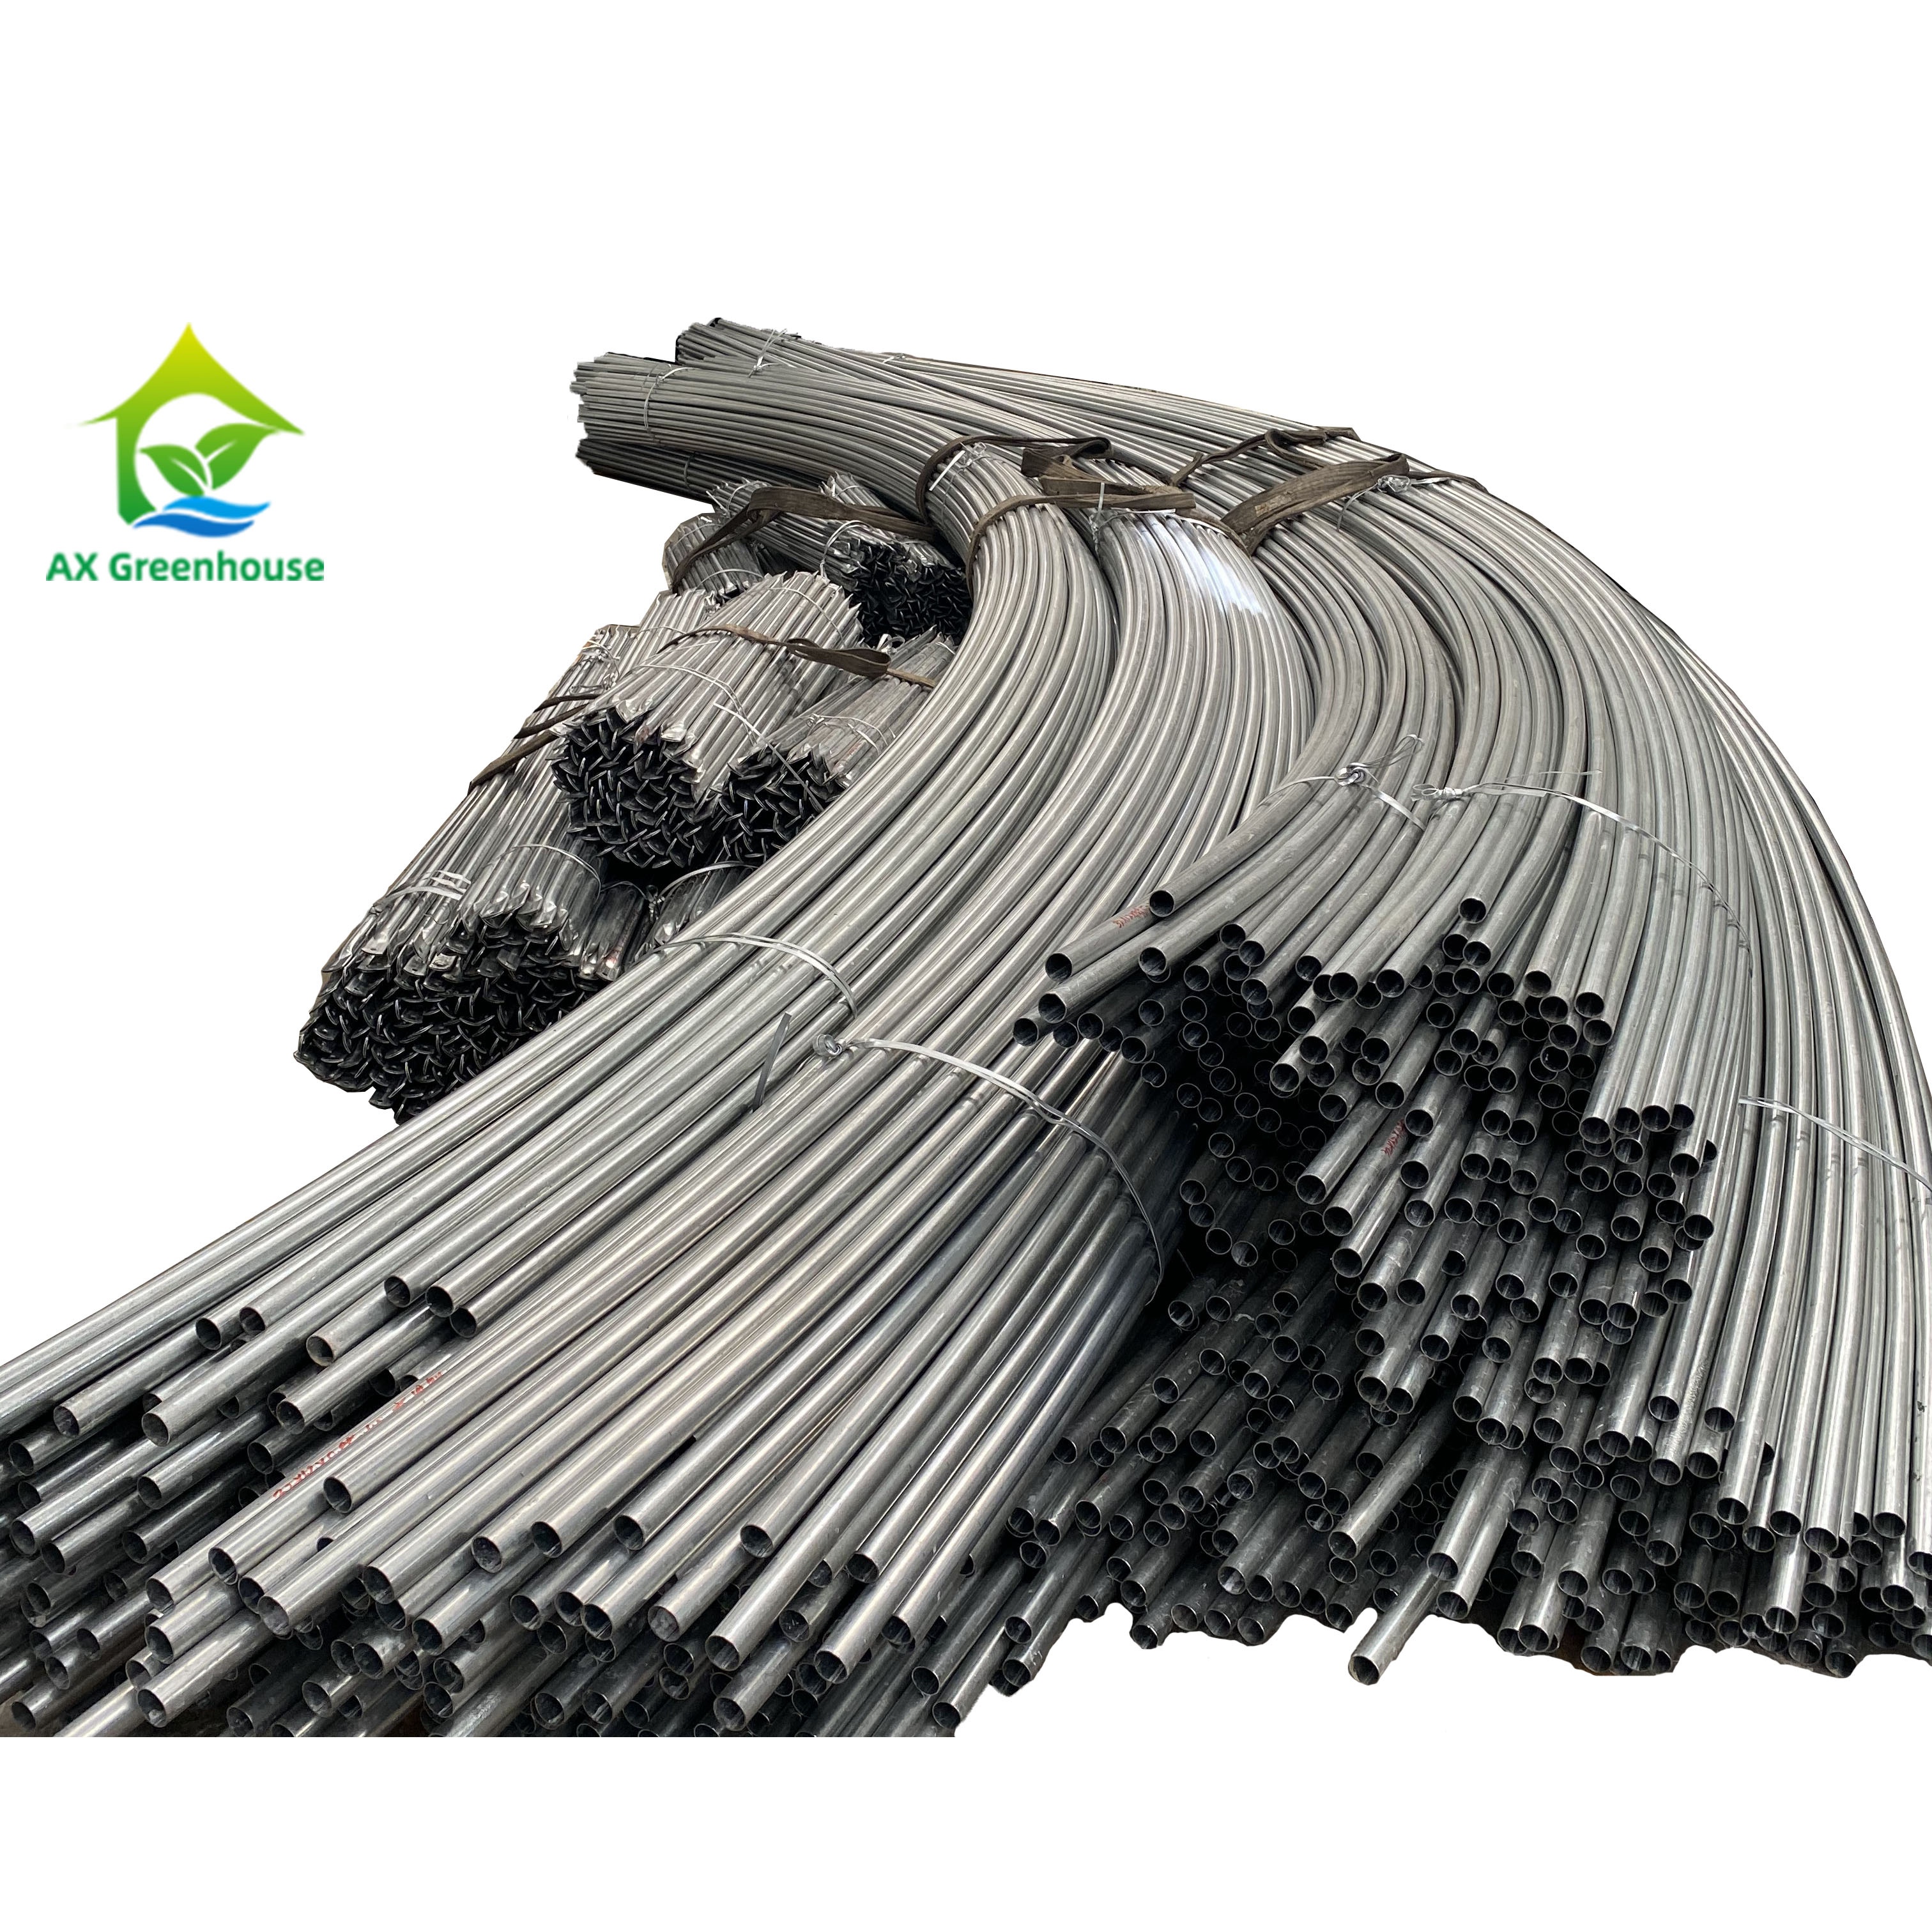 Kongsi aluminium rumah hijau untuk meningkatkan kestabilan rumah hijau, ciri struktur, menduduki peranan prestasi yang lebih besar